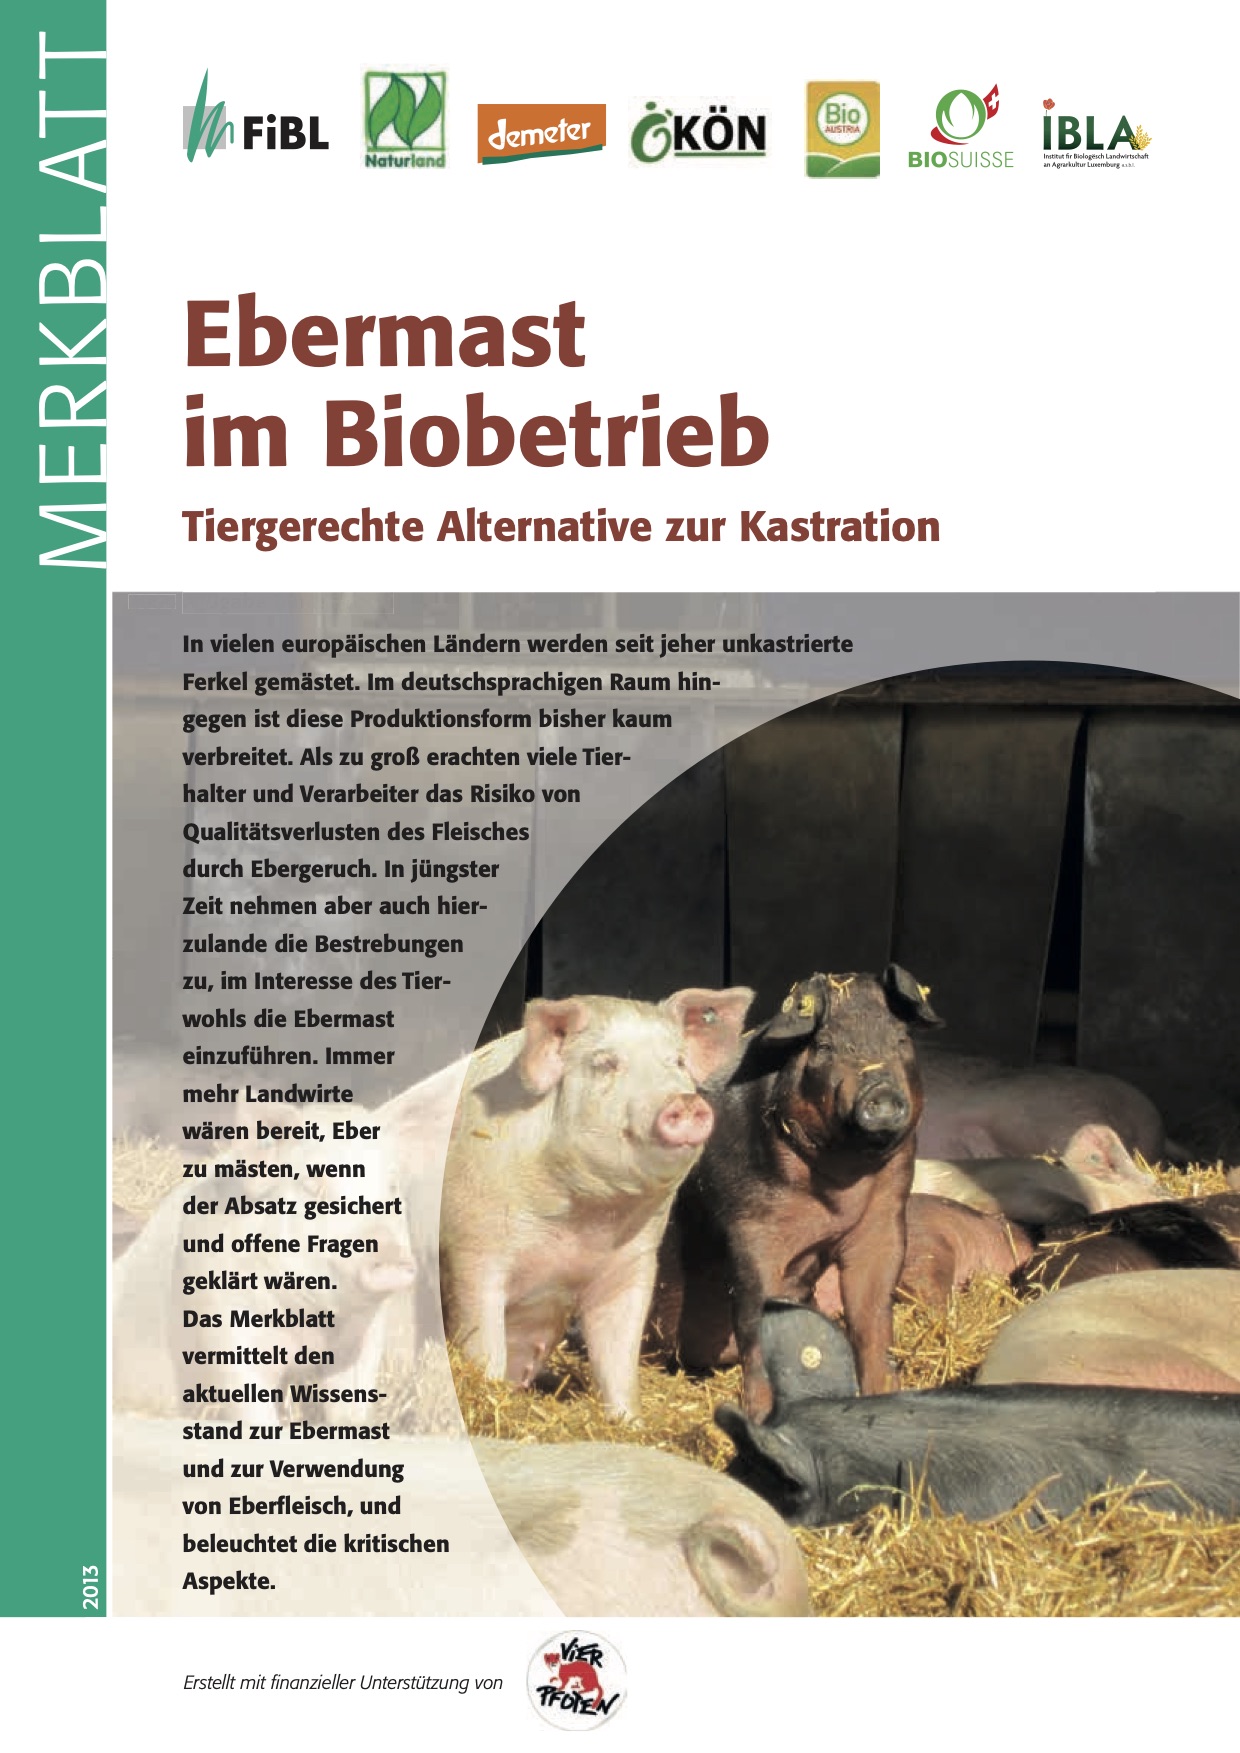 Угояване на глигани в биологични ферми: щадяща животните алтернатива на кастрацията